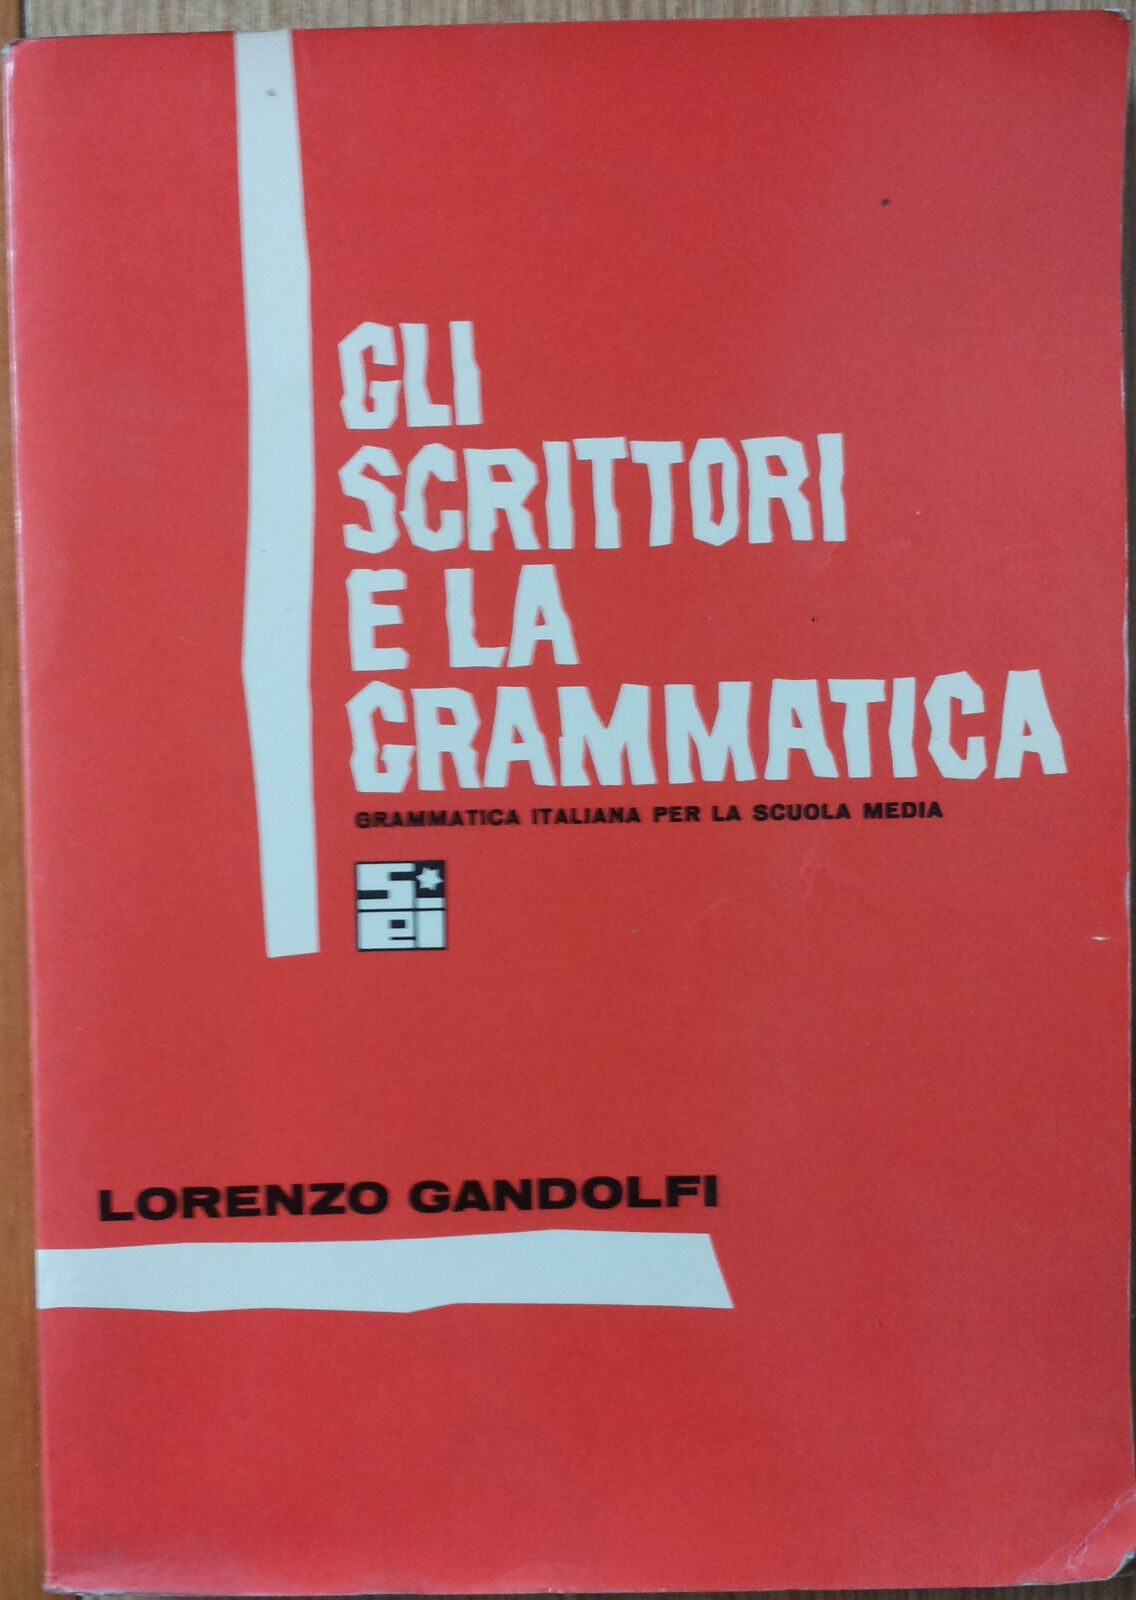 Gli scrittori e la grammatica- Gandolfi - Societ? Editrice Internazionale,1966-R